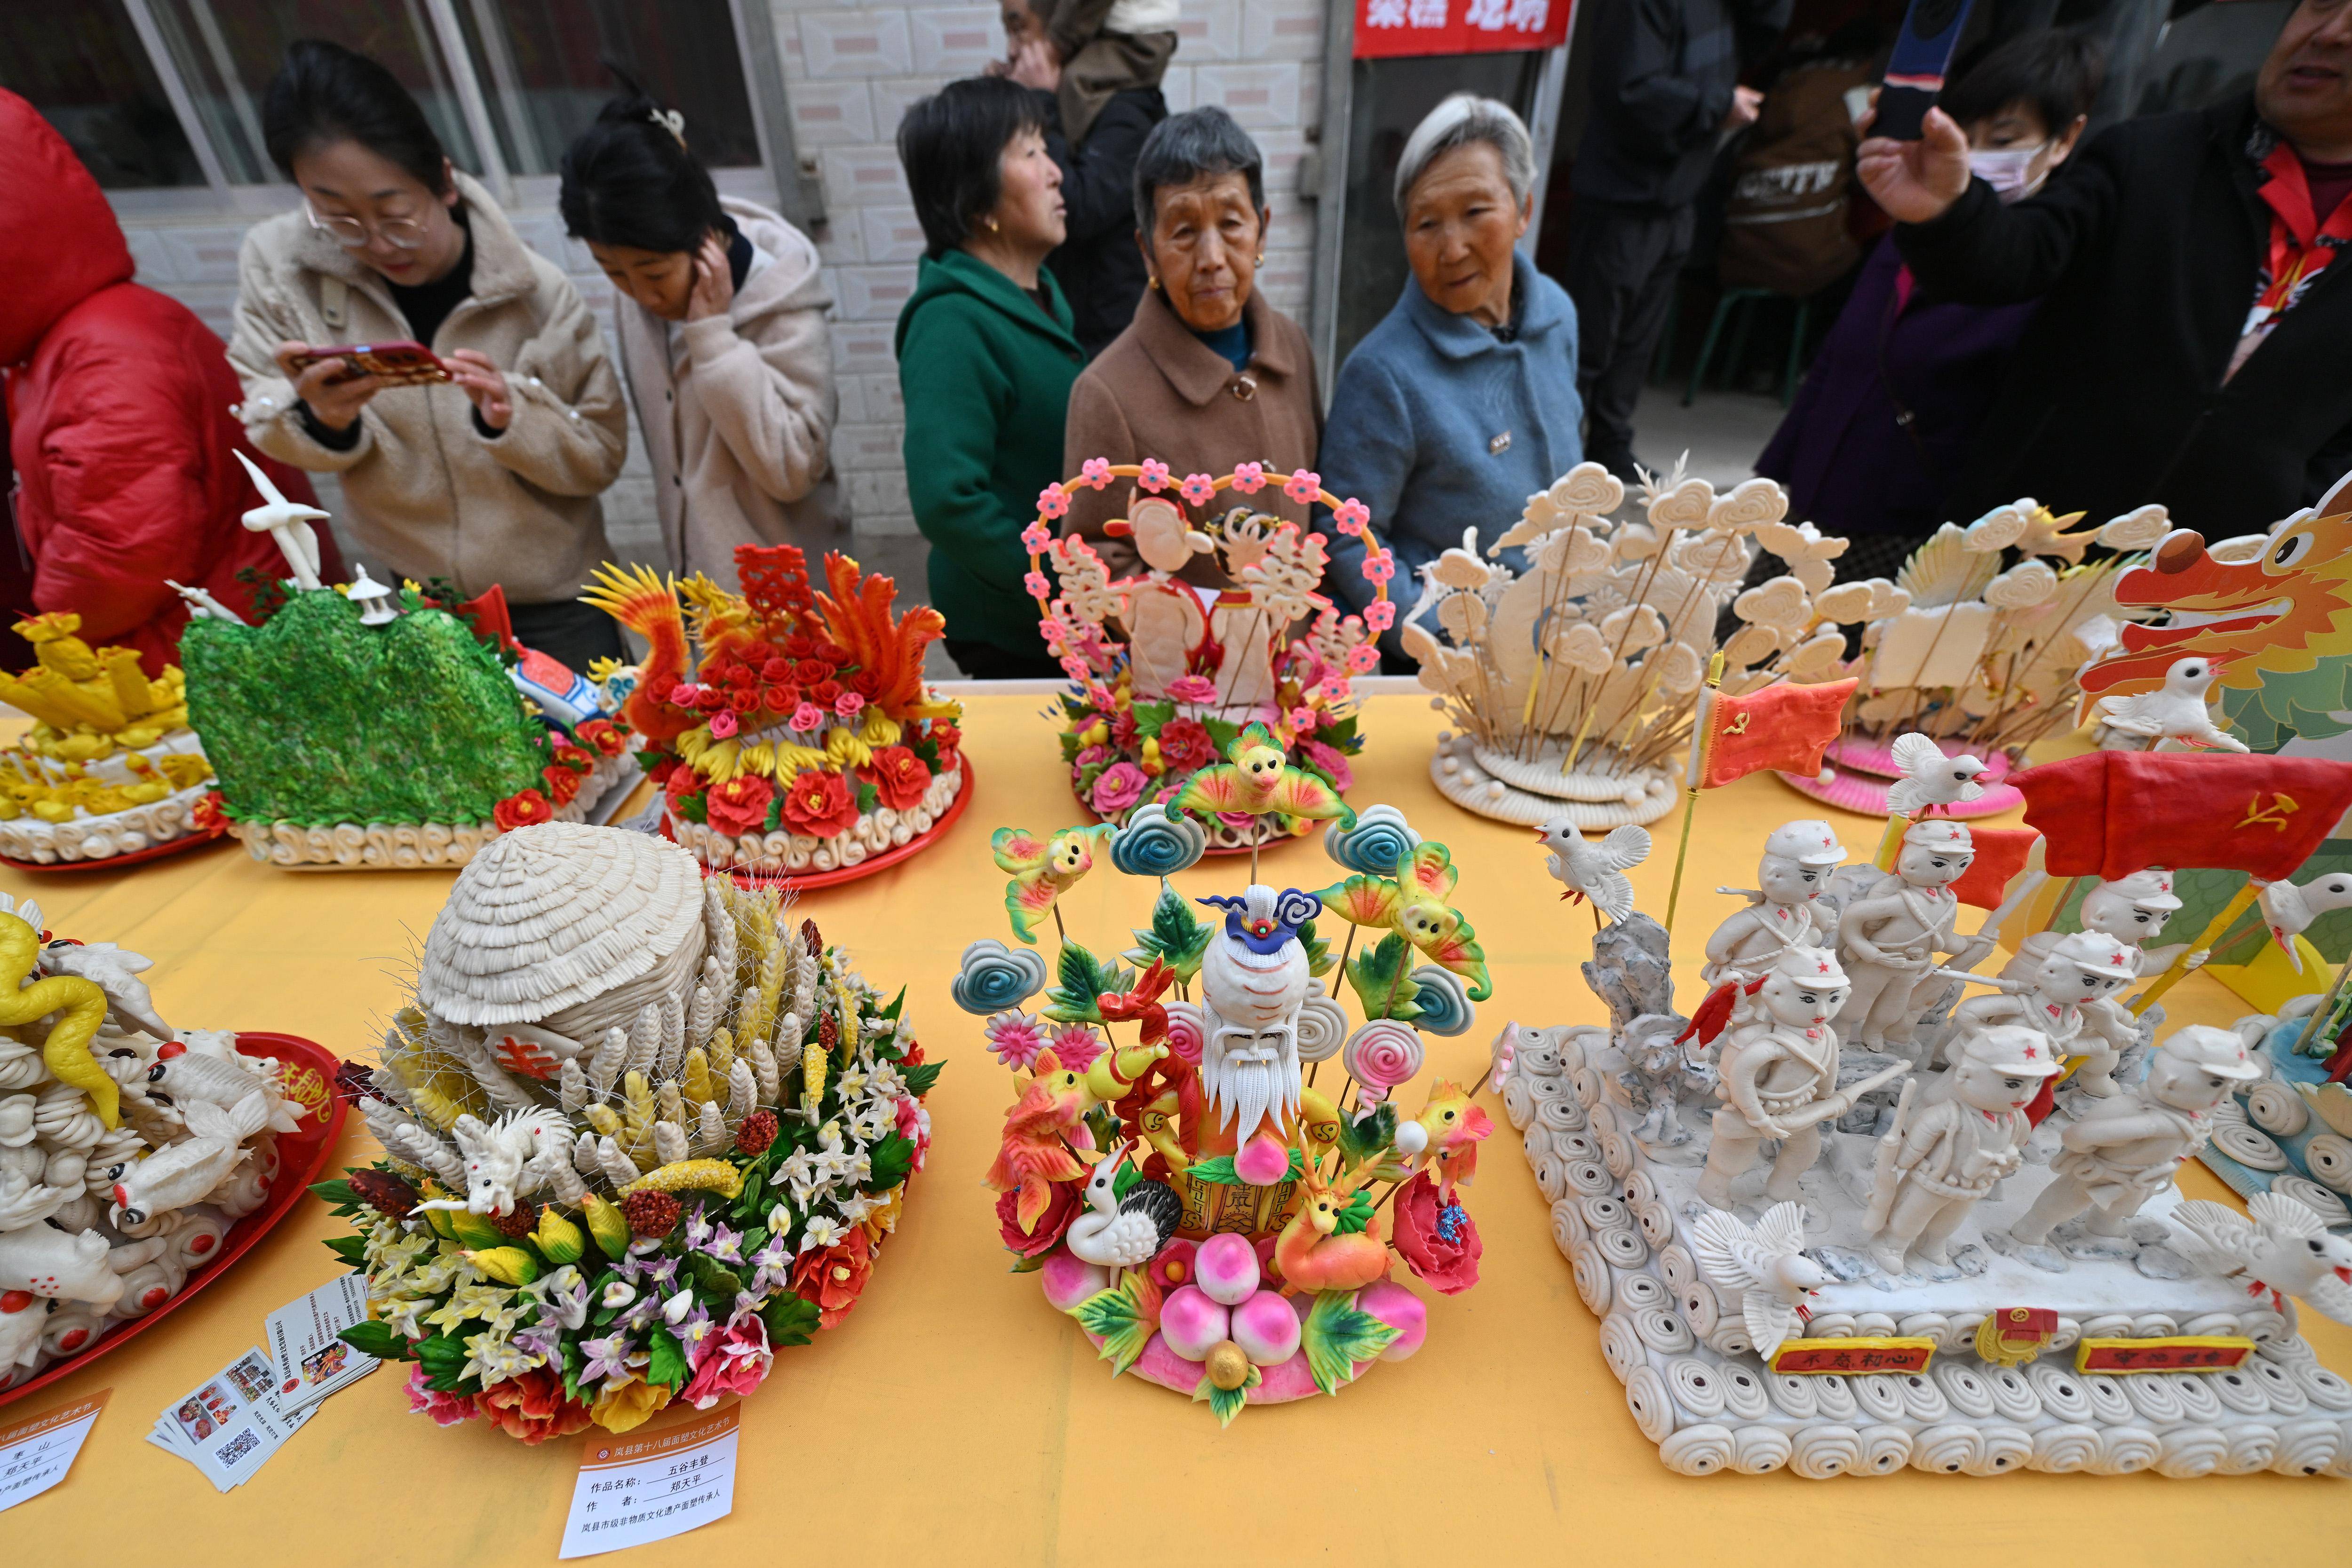 3月28日,在山西省岚县岚城镇,人们欣赏面塑作品